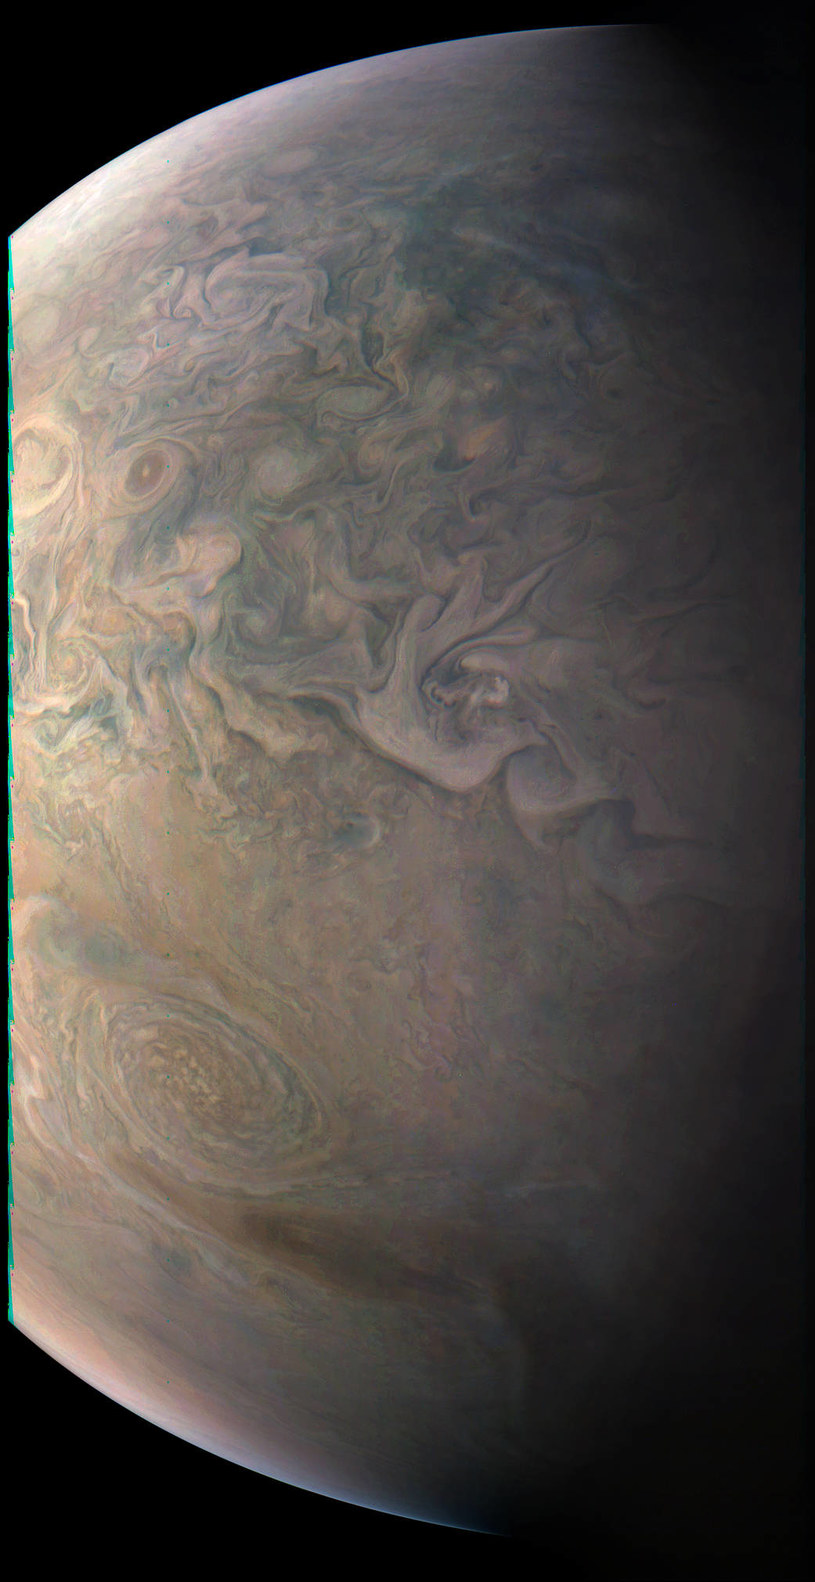 Szczegółowe zdjęcie Jowisza /NASA